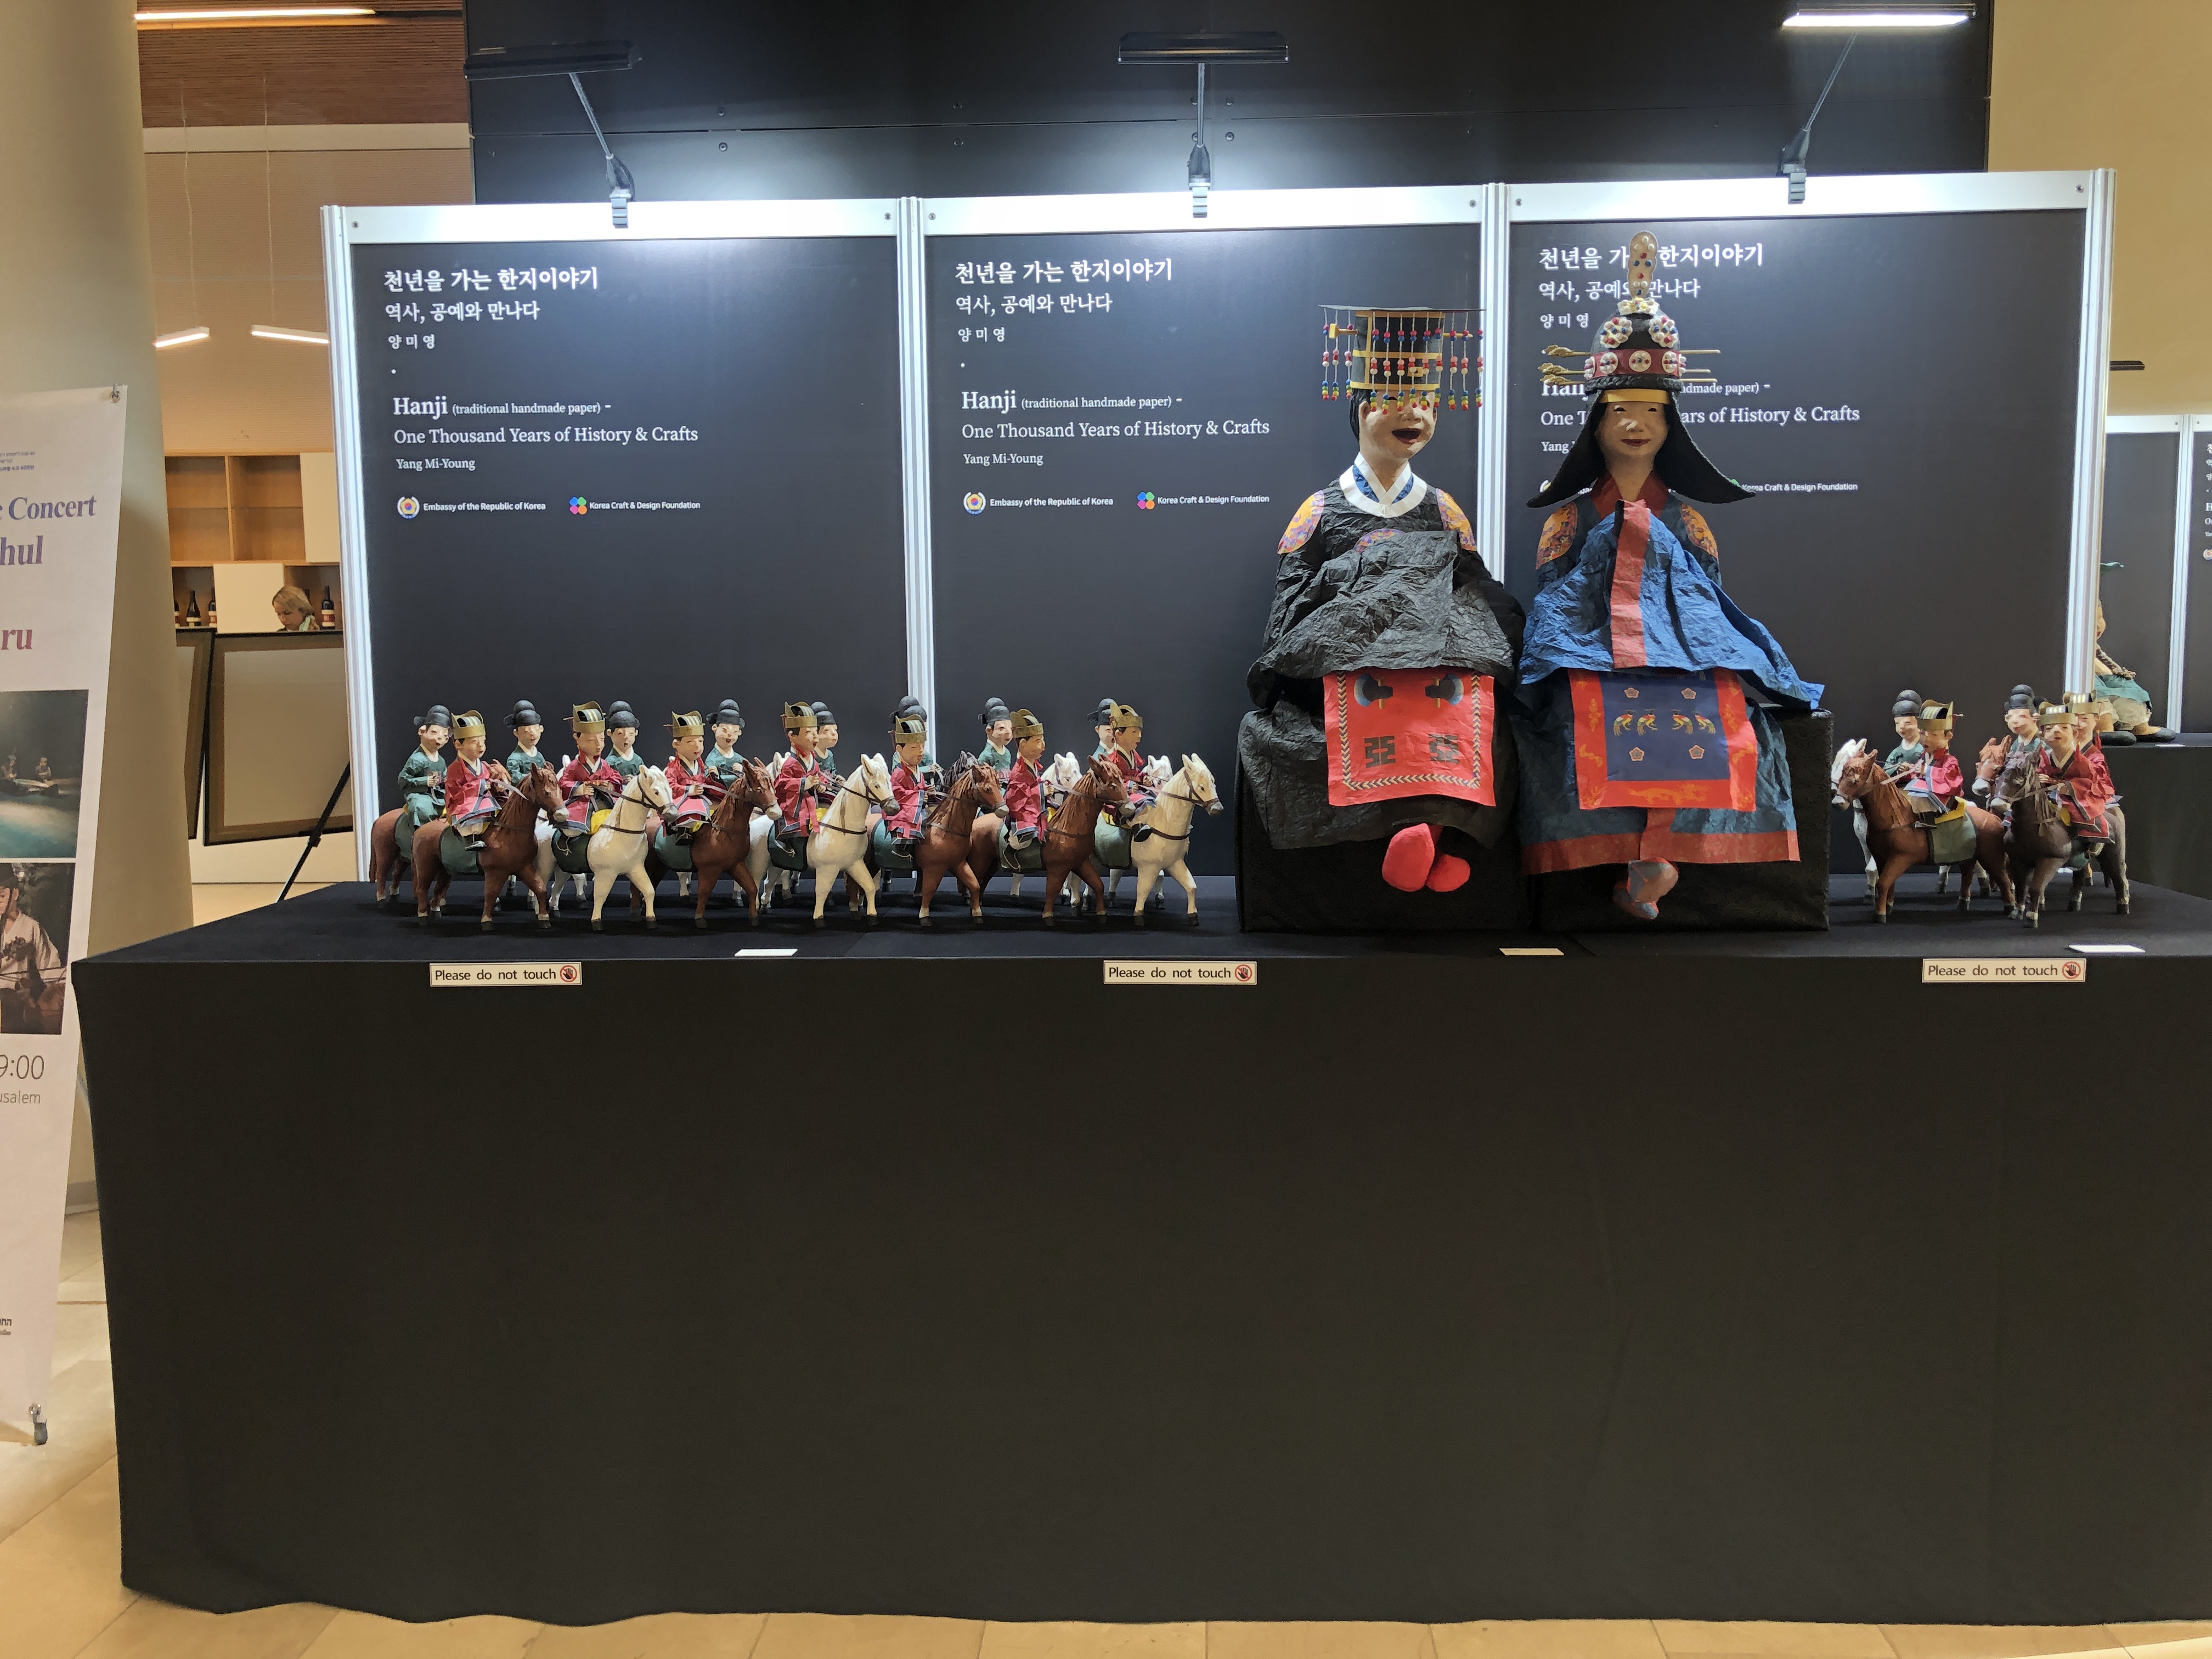 대사관에 한지 조형 작가 양미영 씨의 한지 인형 작품이 전시되어 있다.